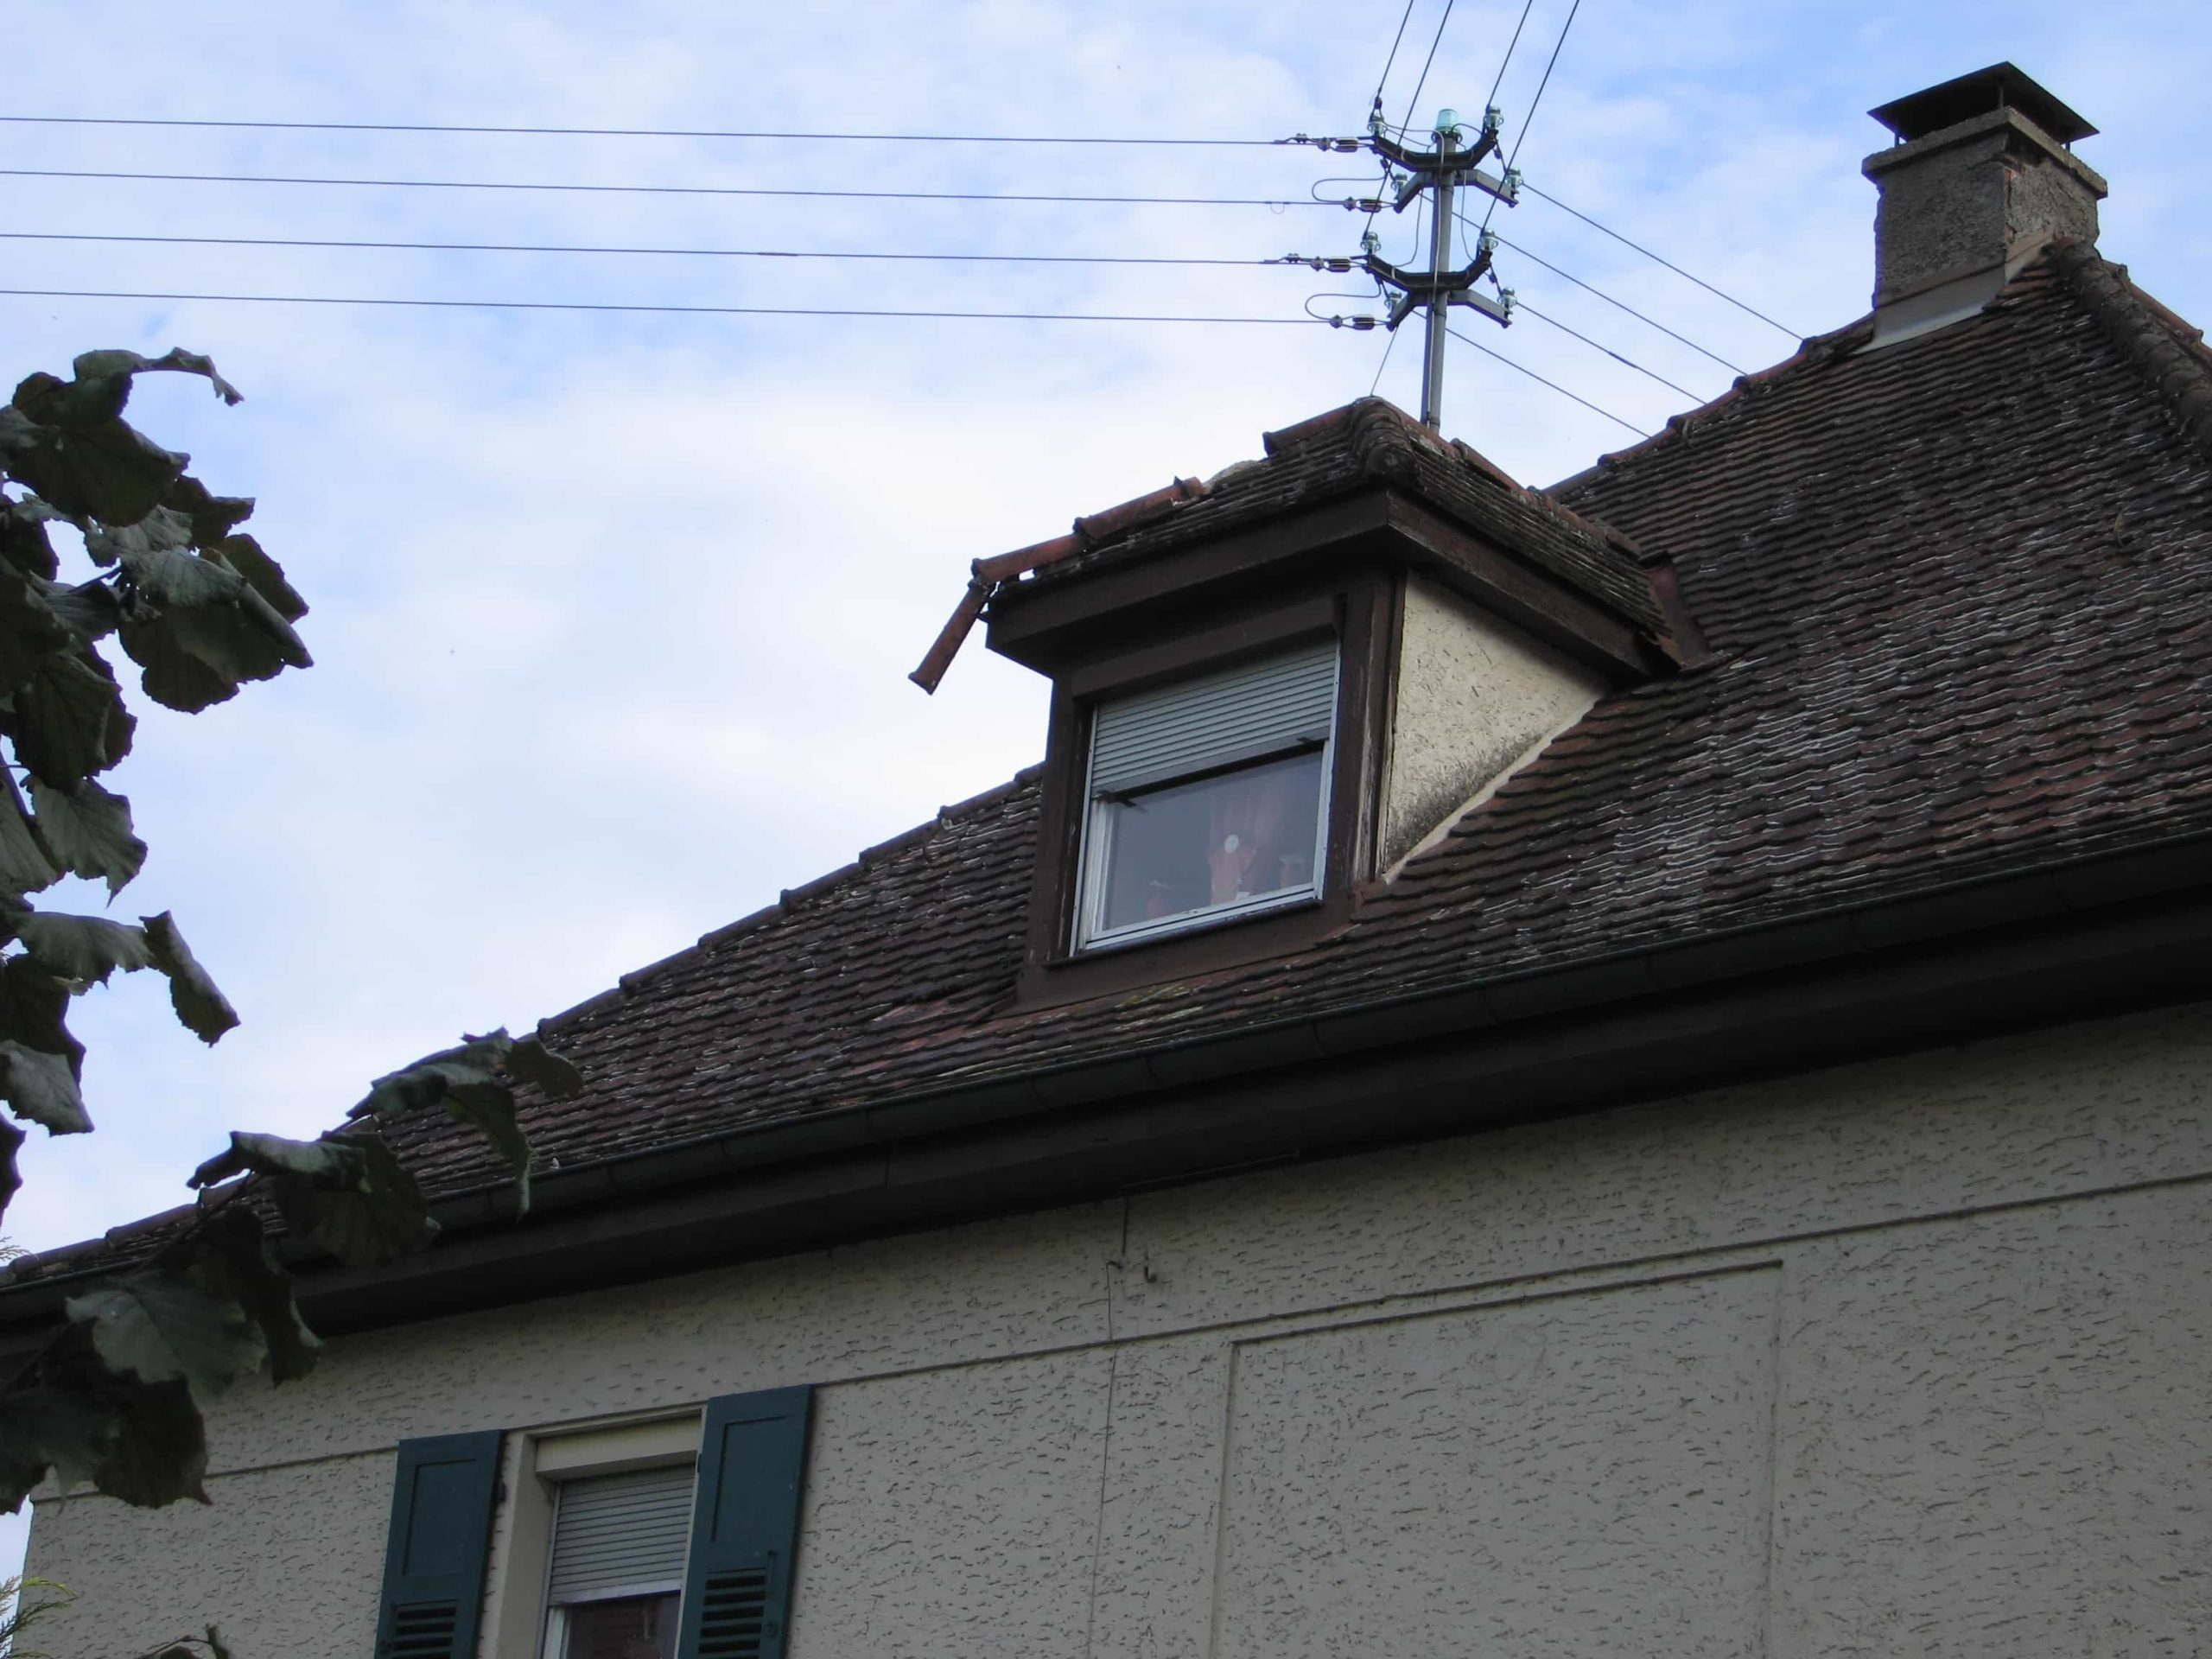 Wir sind die Profis in allen Bereichen am Dach. Bei kleinen Schäden oder undichten Stellen muss nicht gleich das ganze Dach erneuert werden.